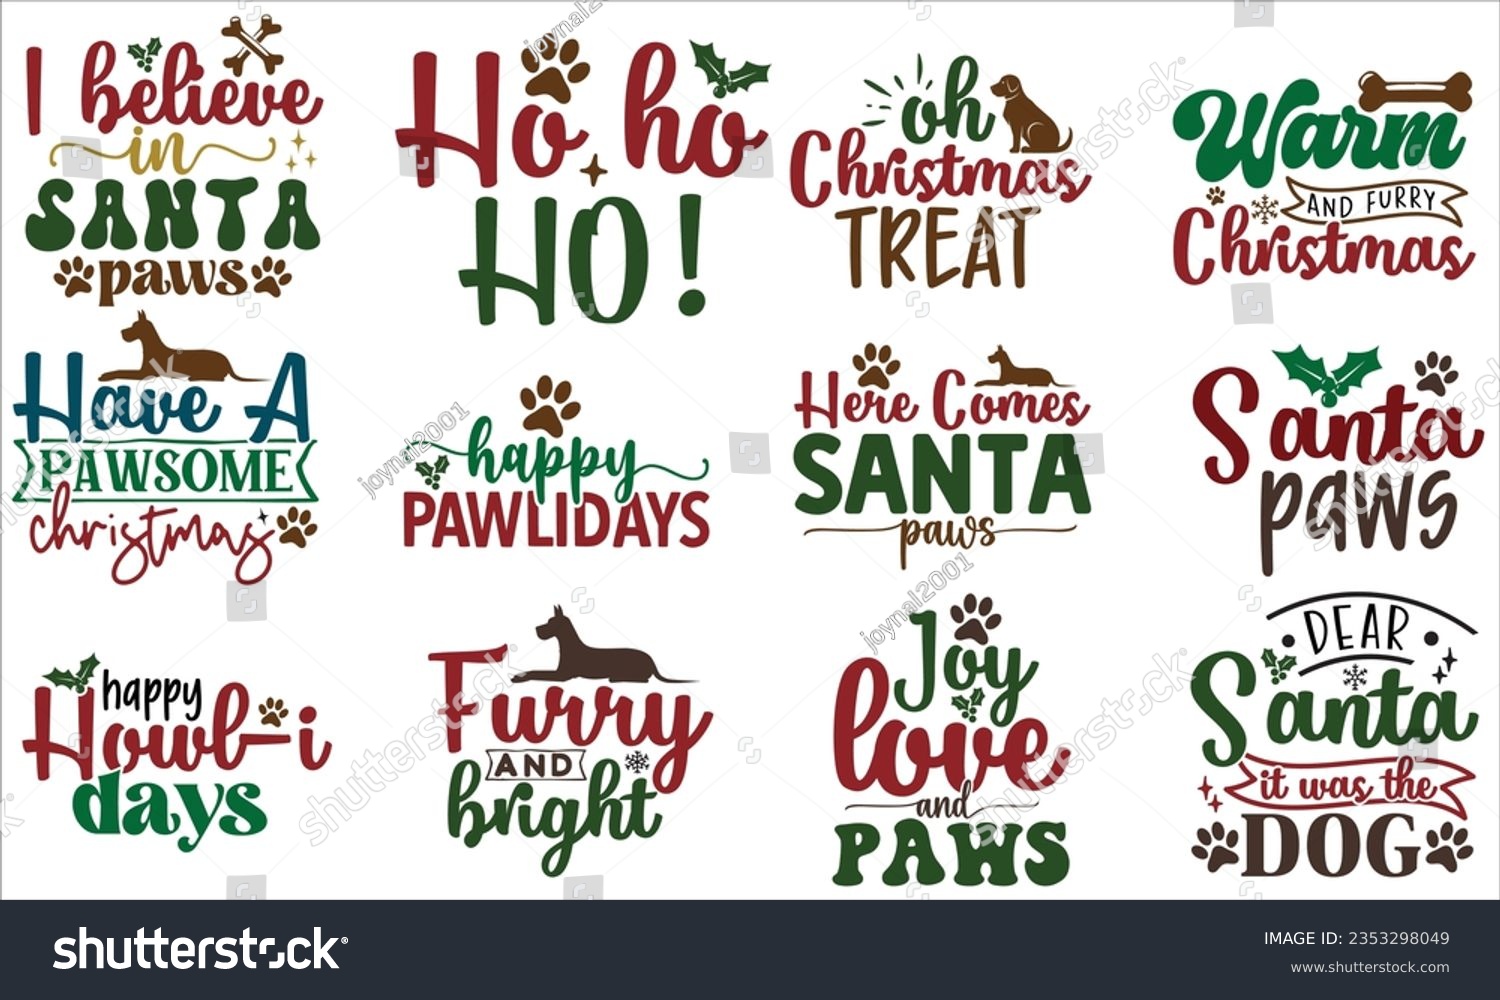 SVG of Christmas Dog Design, Christmas Dog SVG Design Template, Christmas Dog SVG bundle. svg